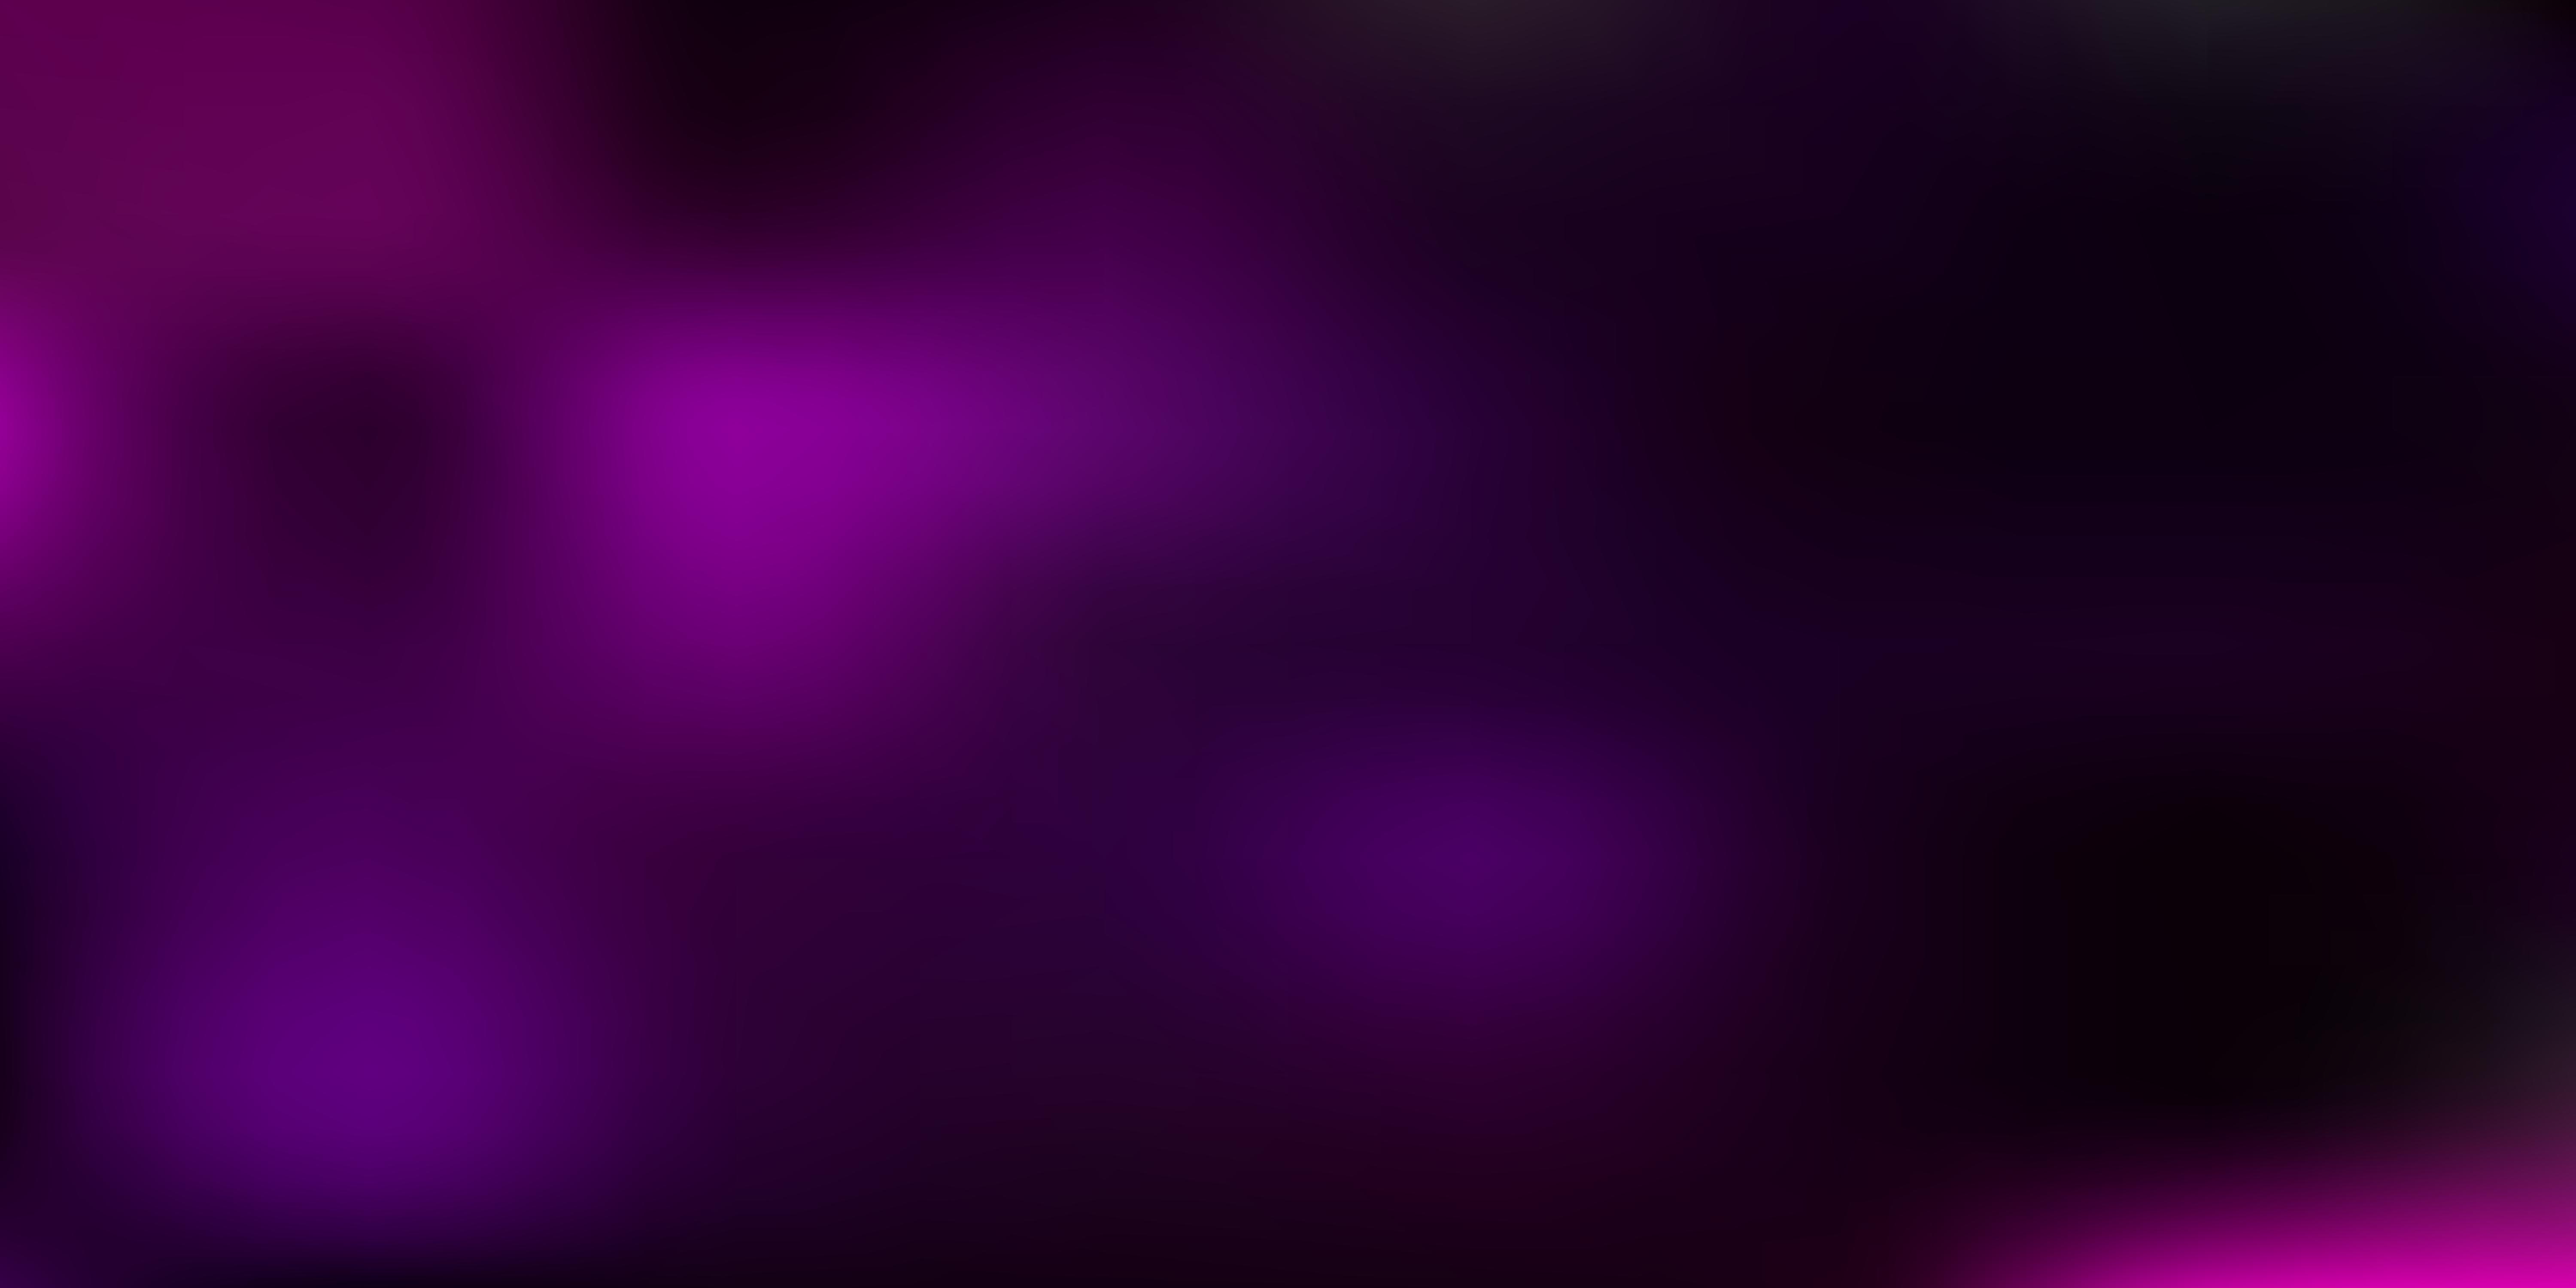 Dark purple, pink vector blurred background. 1941218 Vector Art at Vecteezy